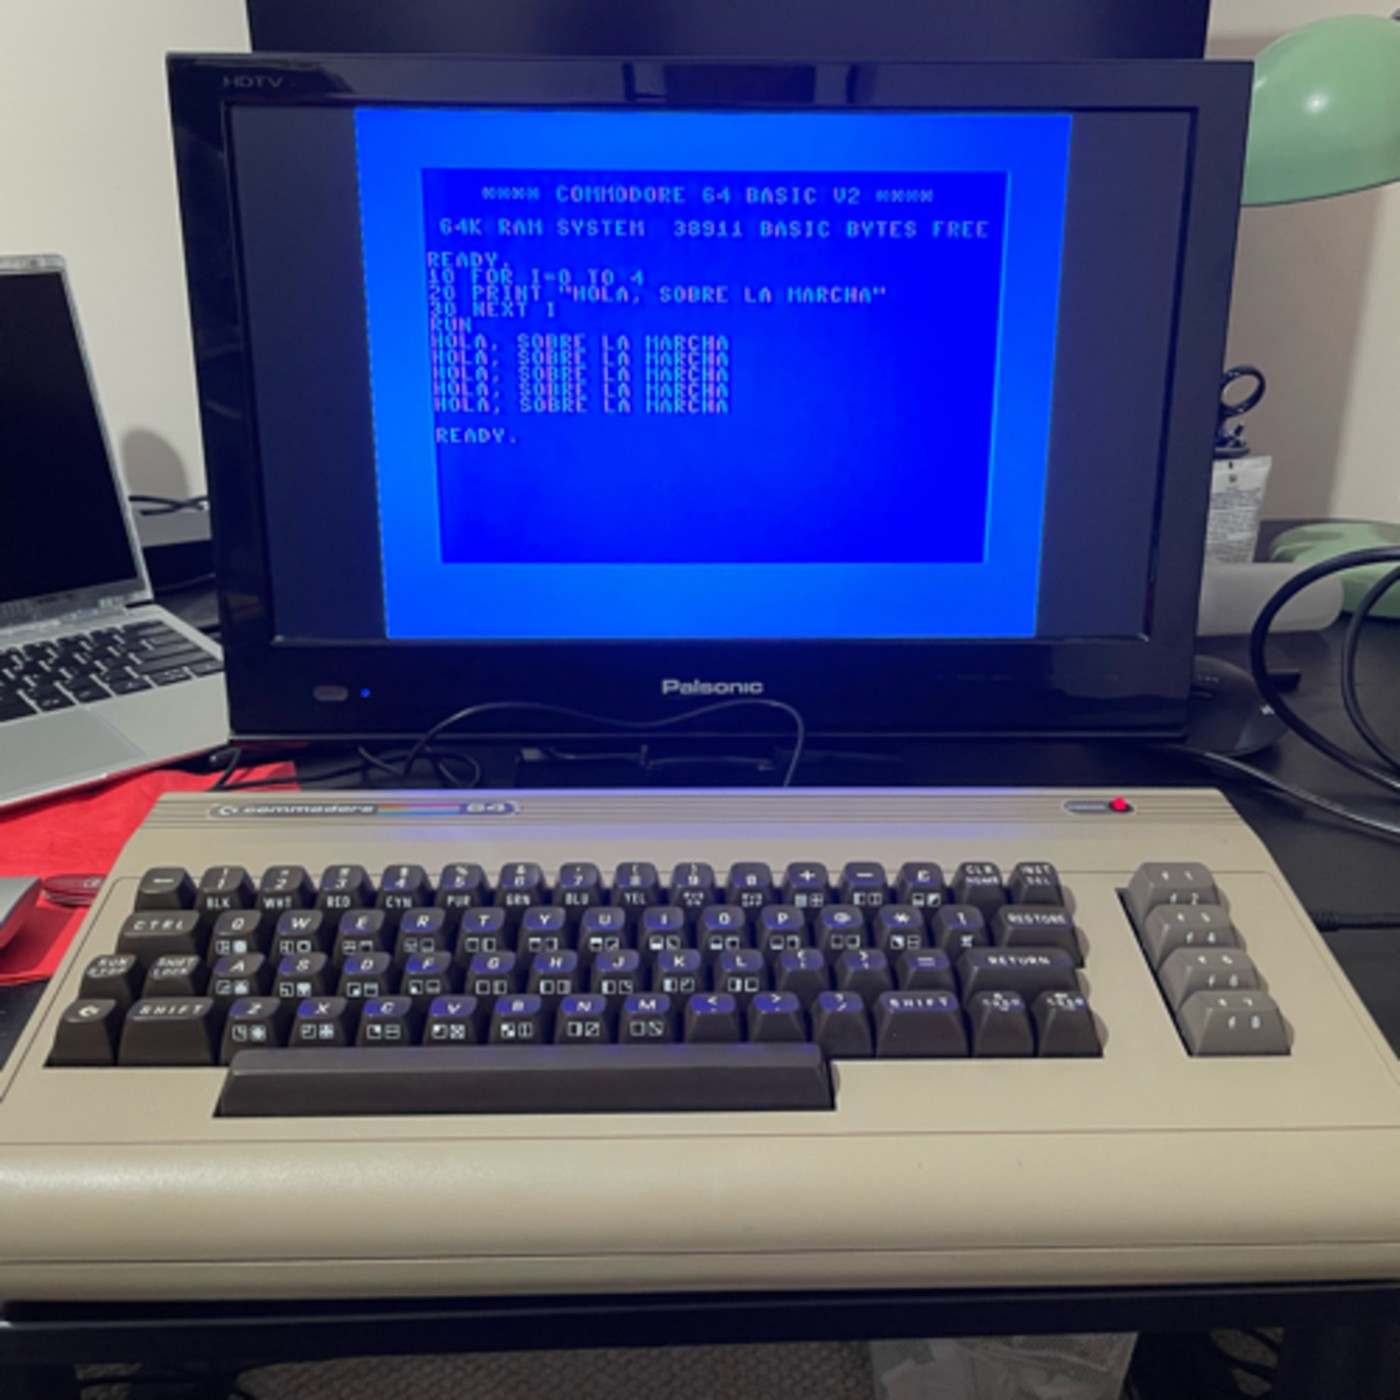 Mi Commodore 64